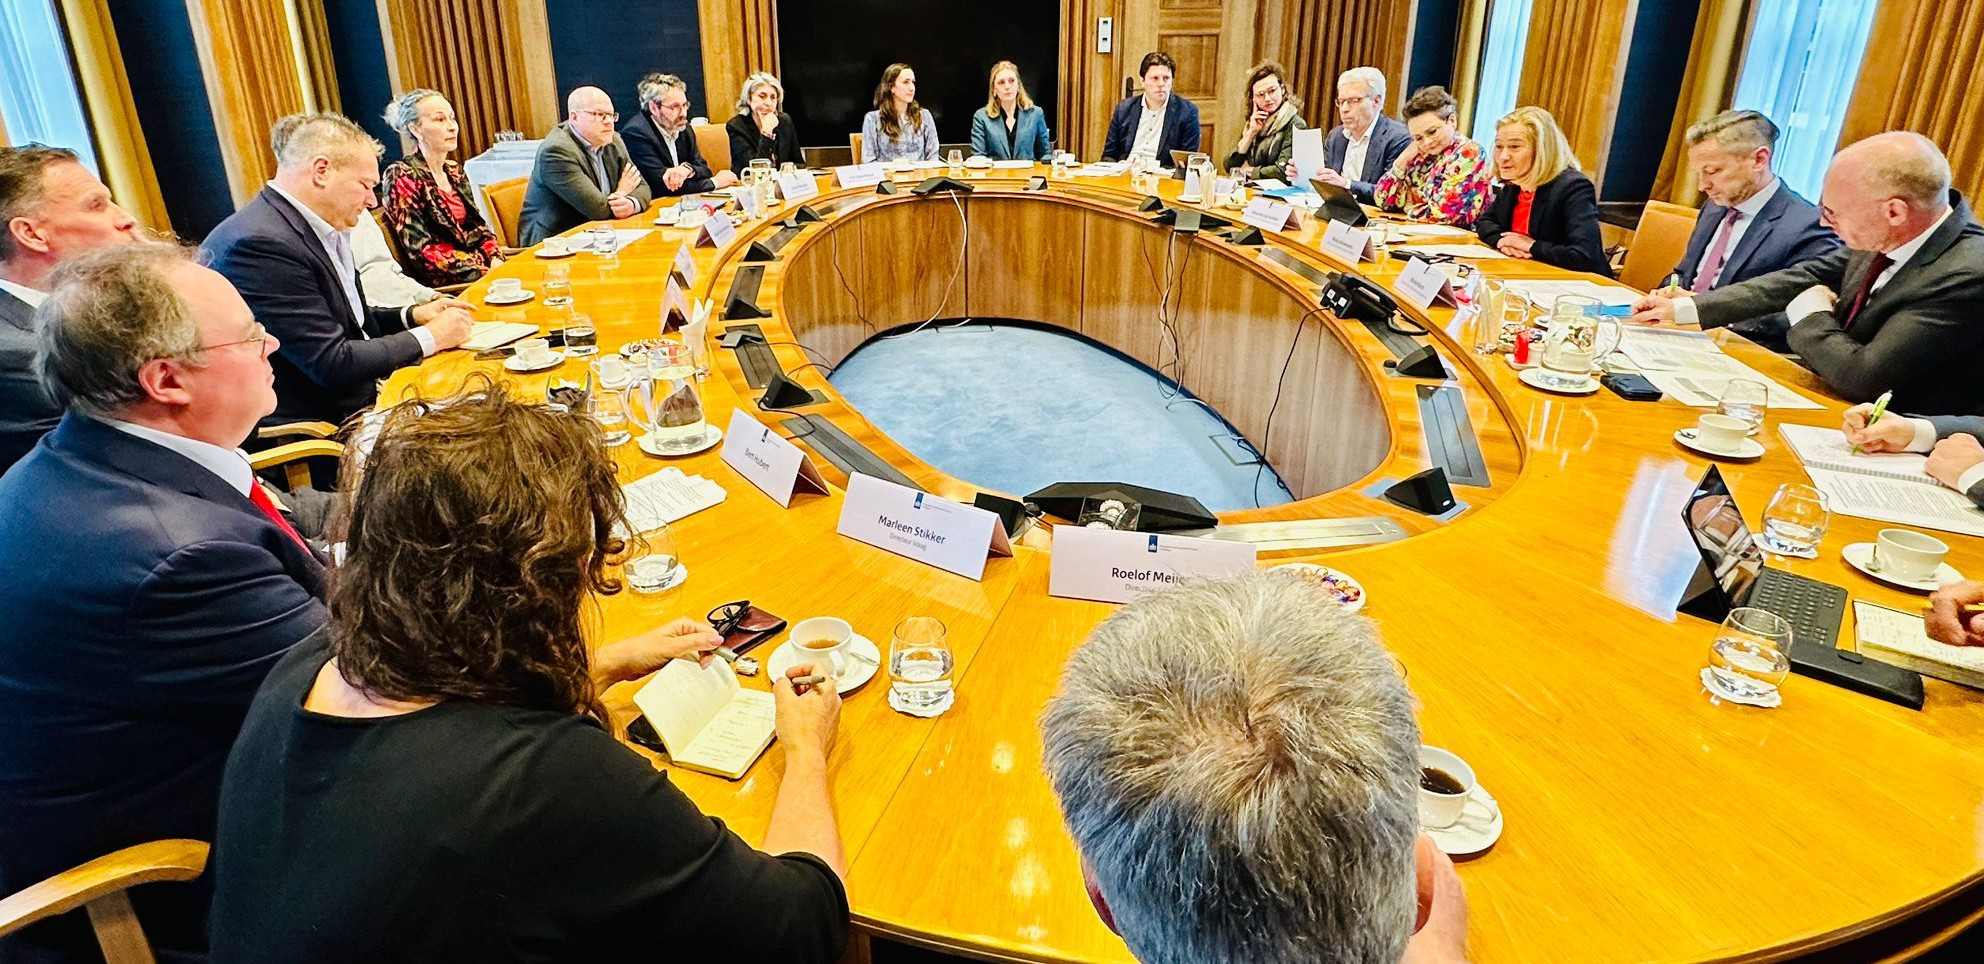 Ovale tafel vol mensen met naambordjes, met aan de rechterkant de minister en staatssecretaris